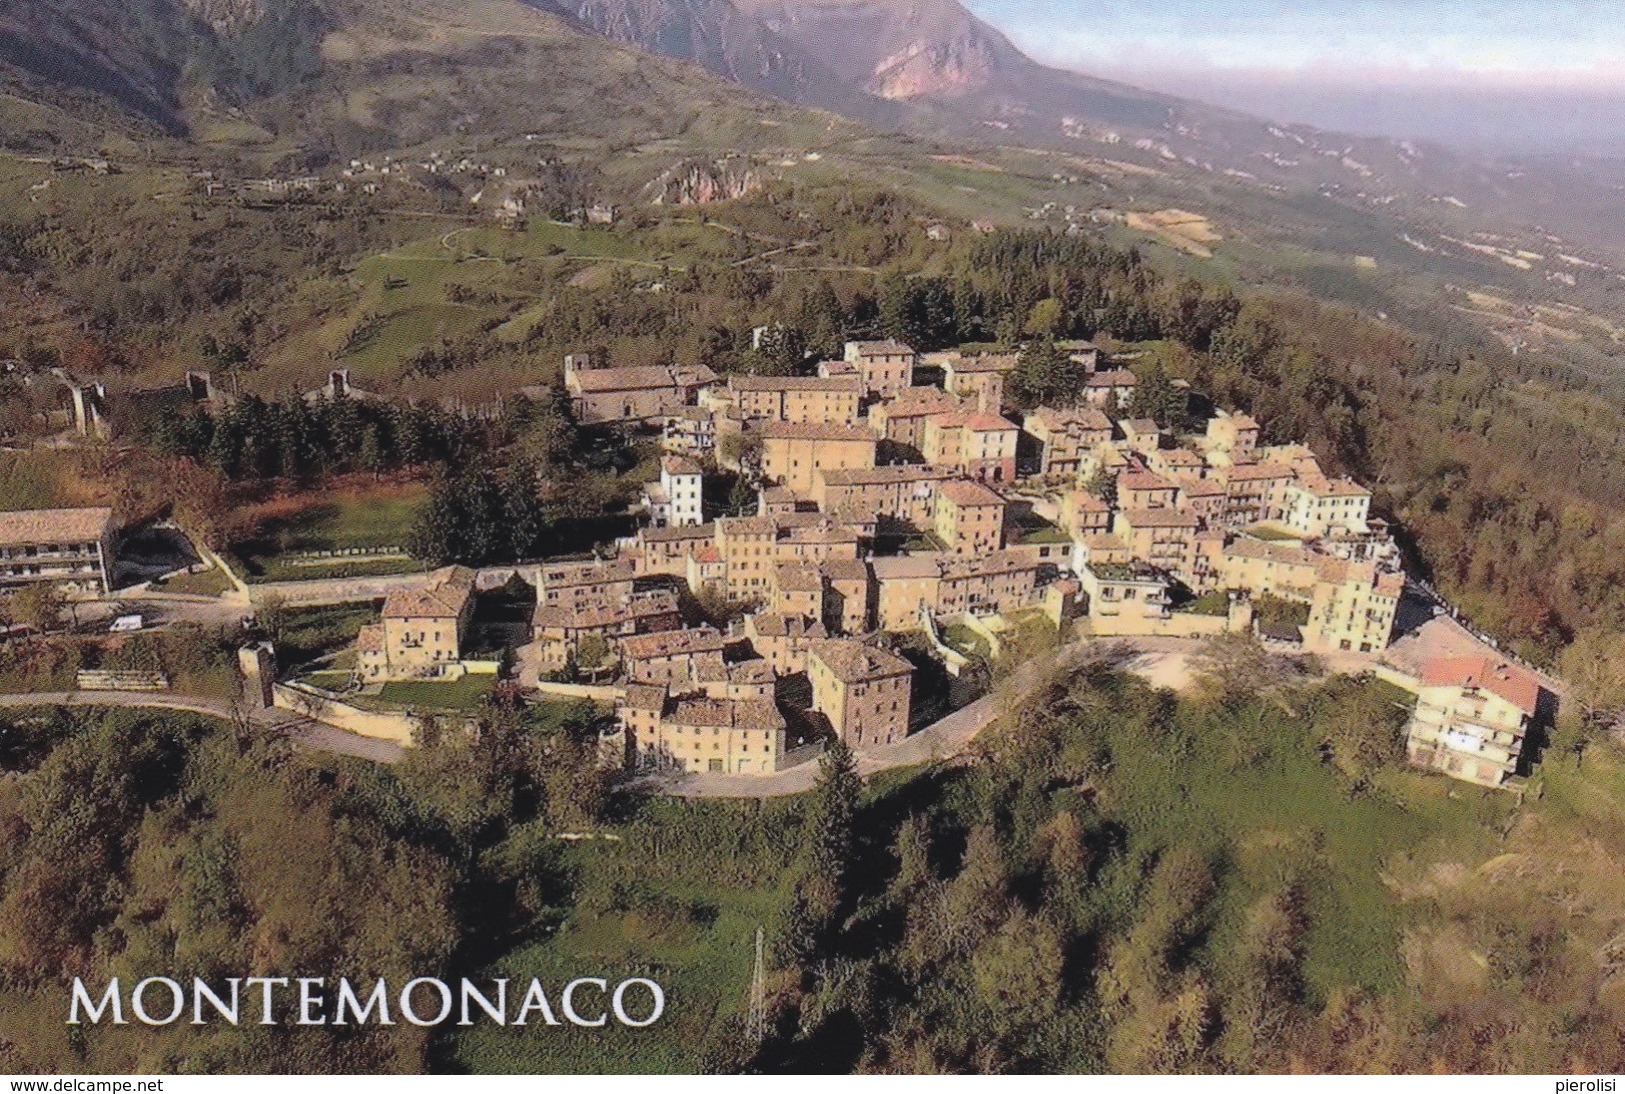 (C350) - MONTEMONACO (Ascoli Piceno) - Panorama - Ascoli Piceno